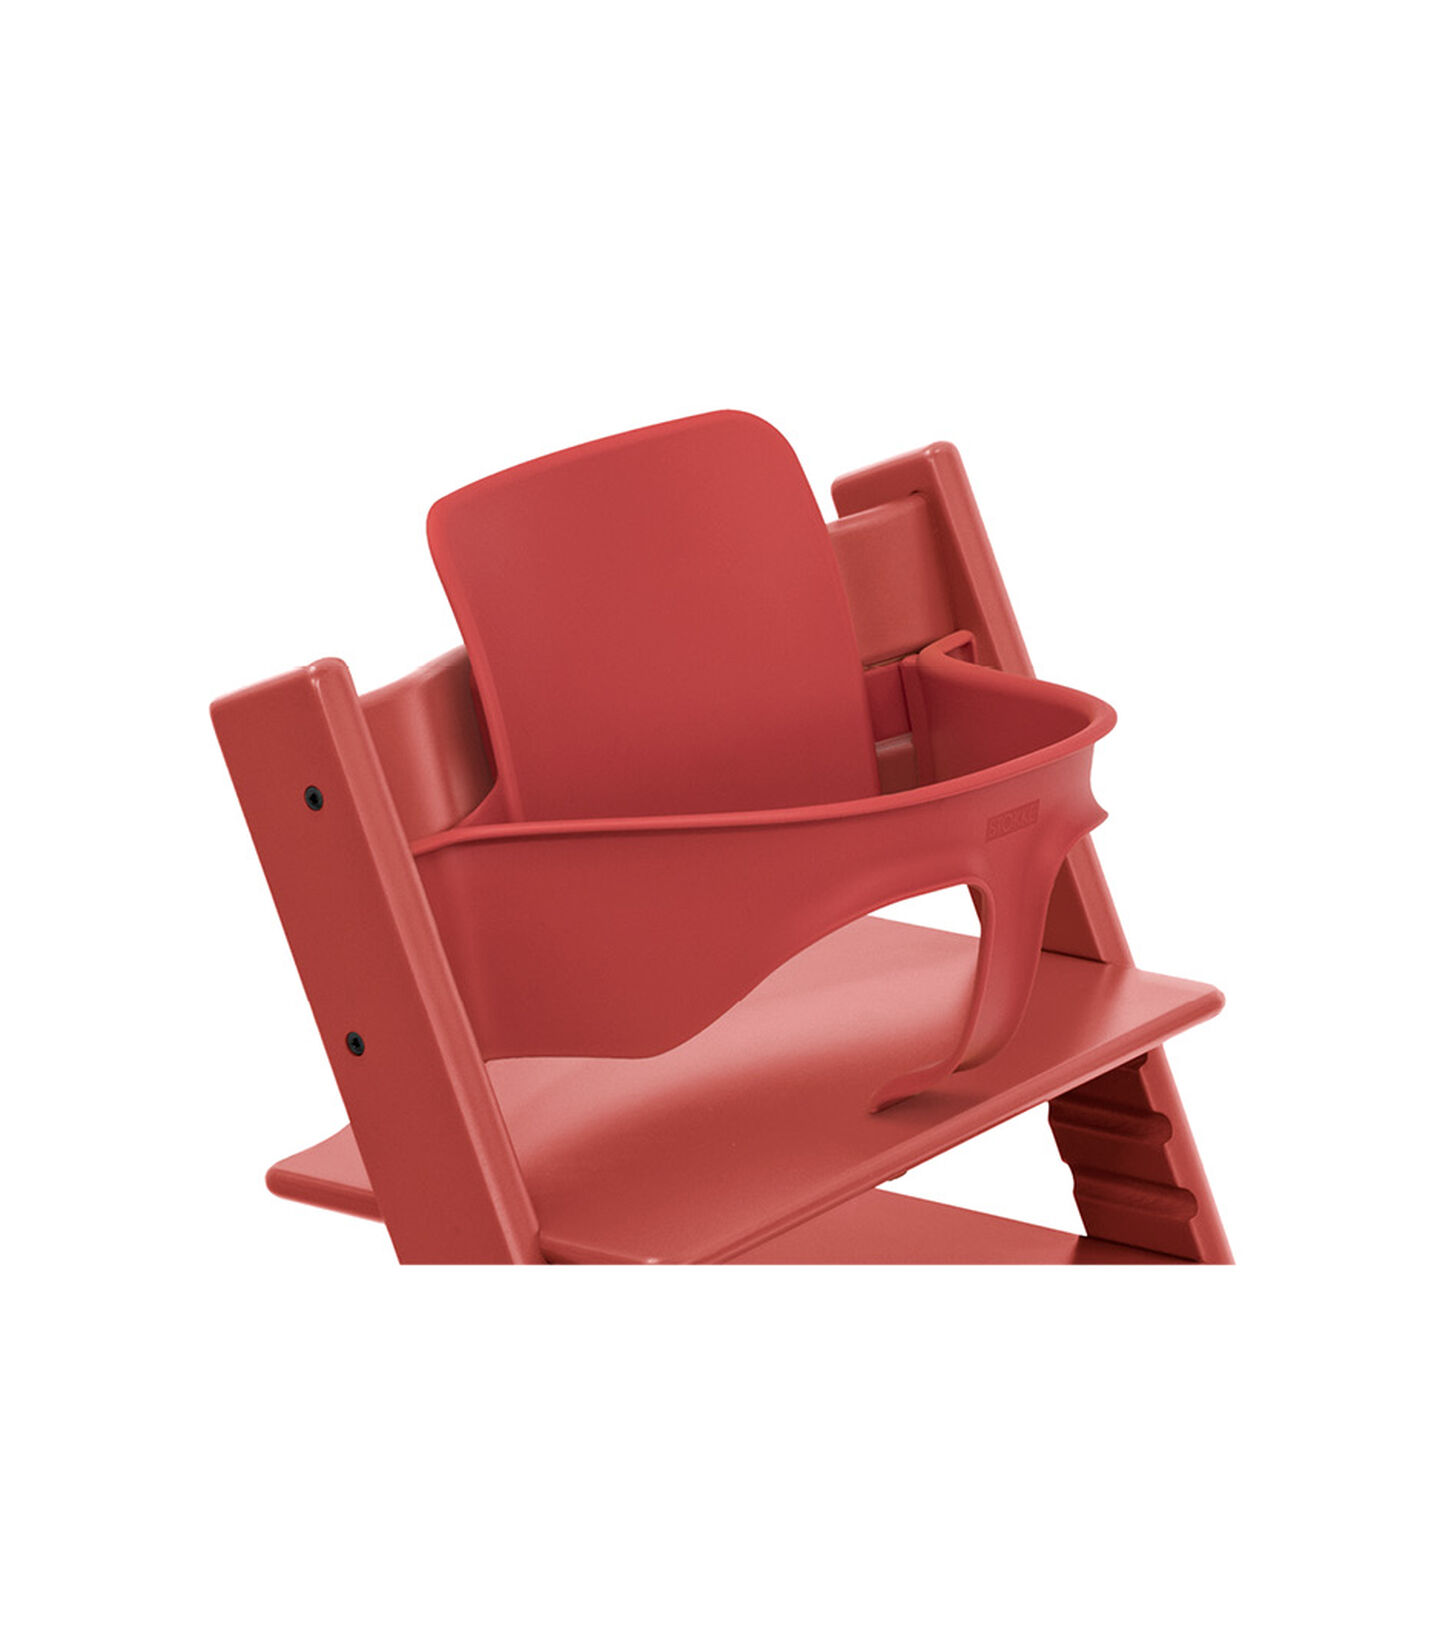 Stokke - Chaise tripp trapp rouge avec baby set et coussin (ancien